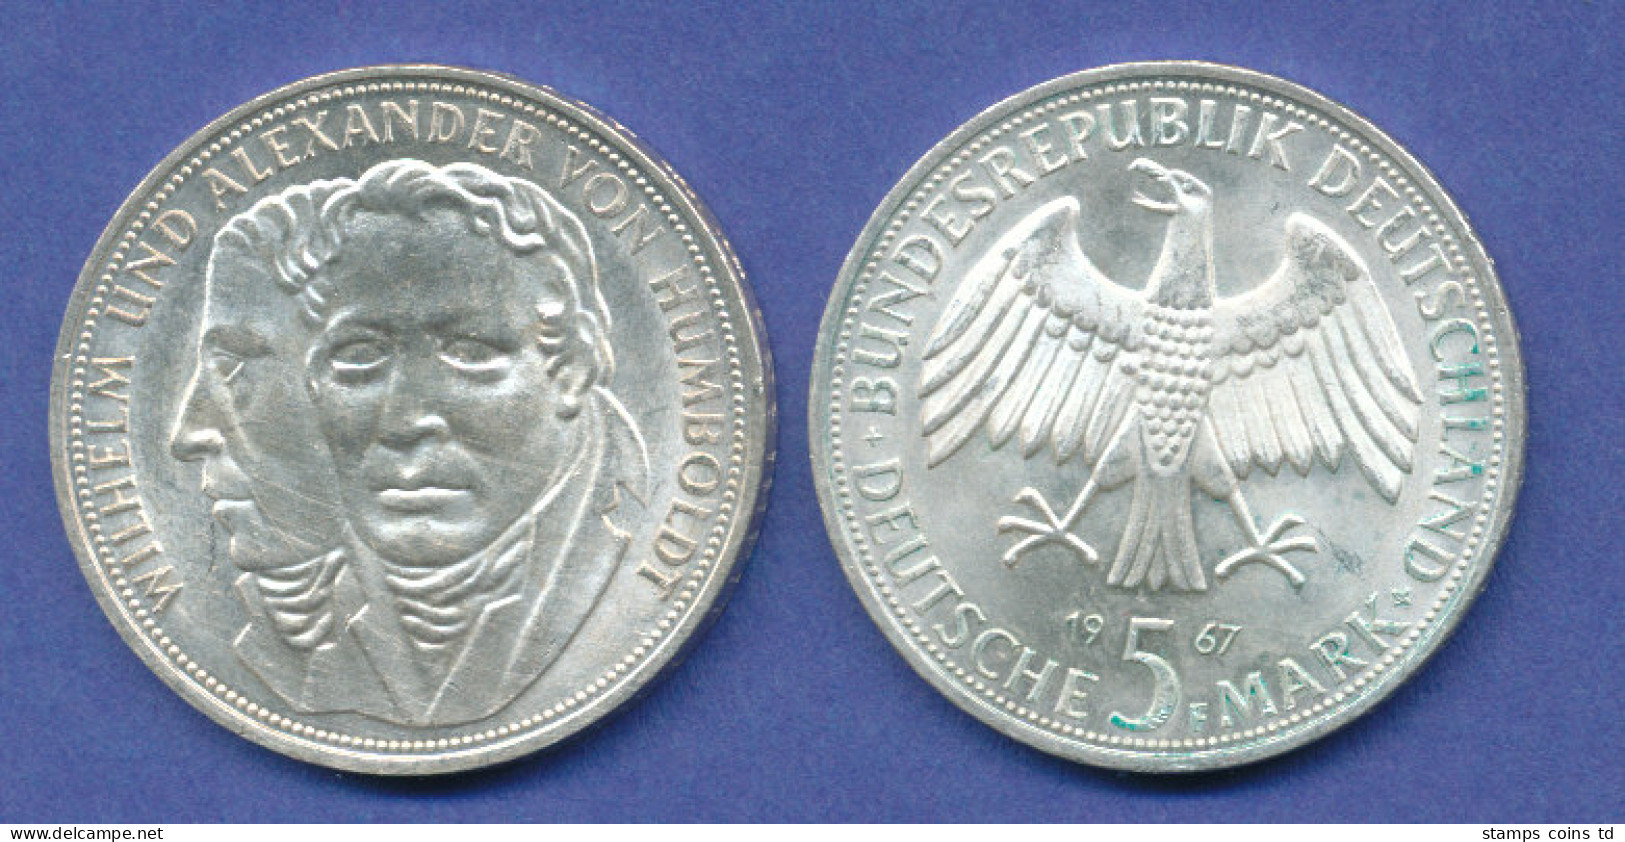 Bundesrepublik 5DM Silber-Gedenkmünze 1967, Wilhelm / Alexander Von Humboldt - 5 Marchi